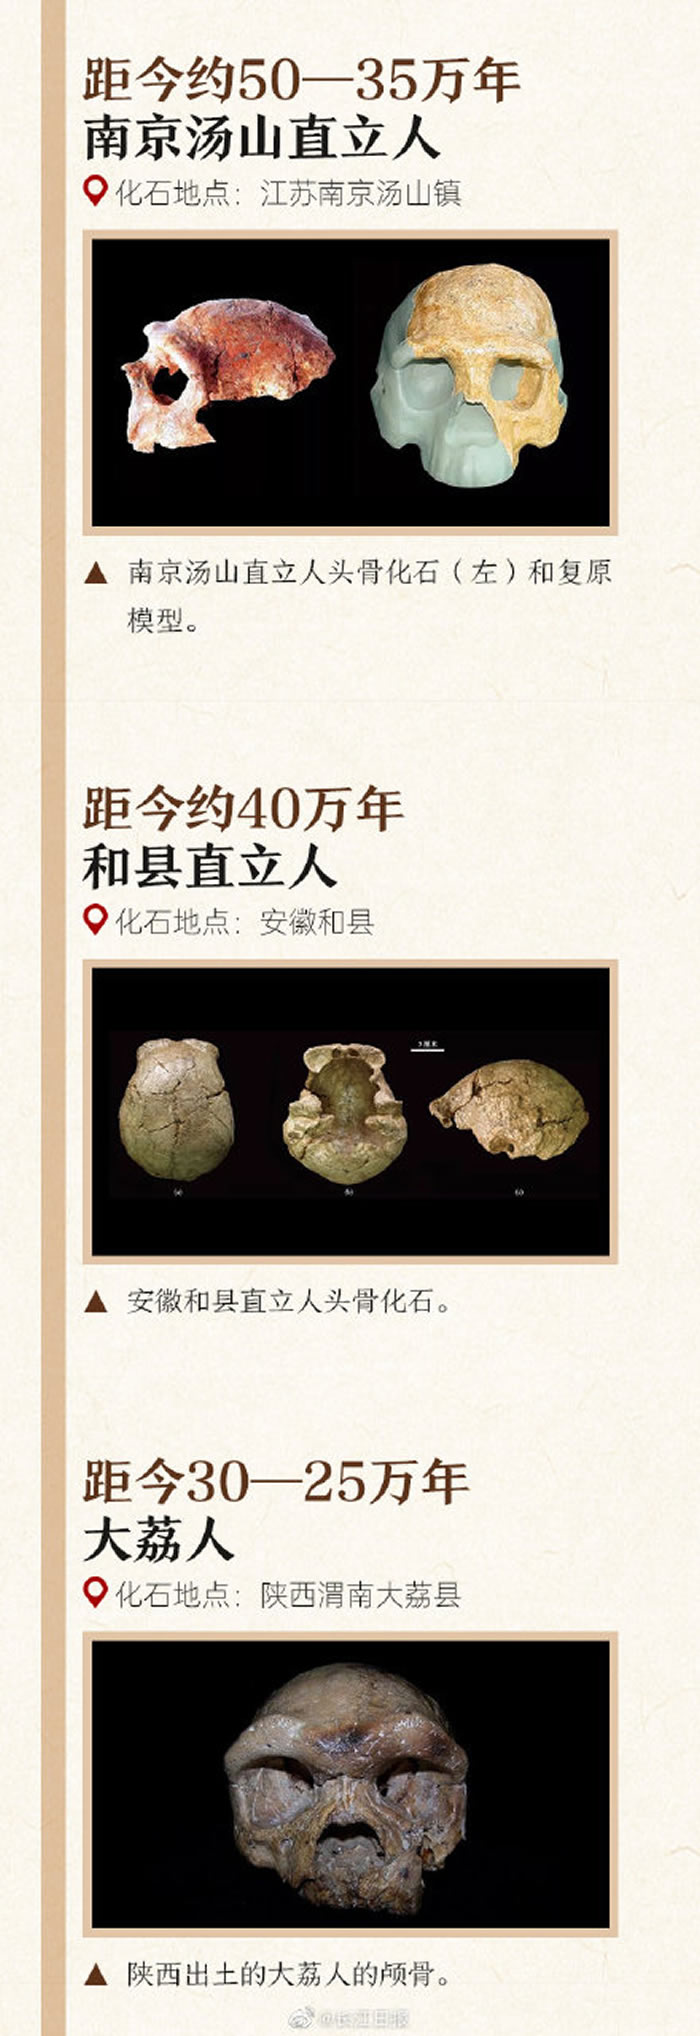 一图认识中国的各种古人类化石